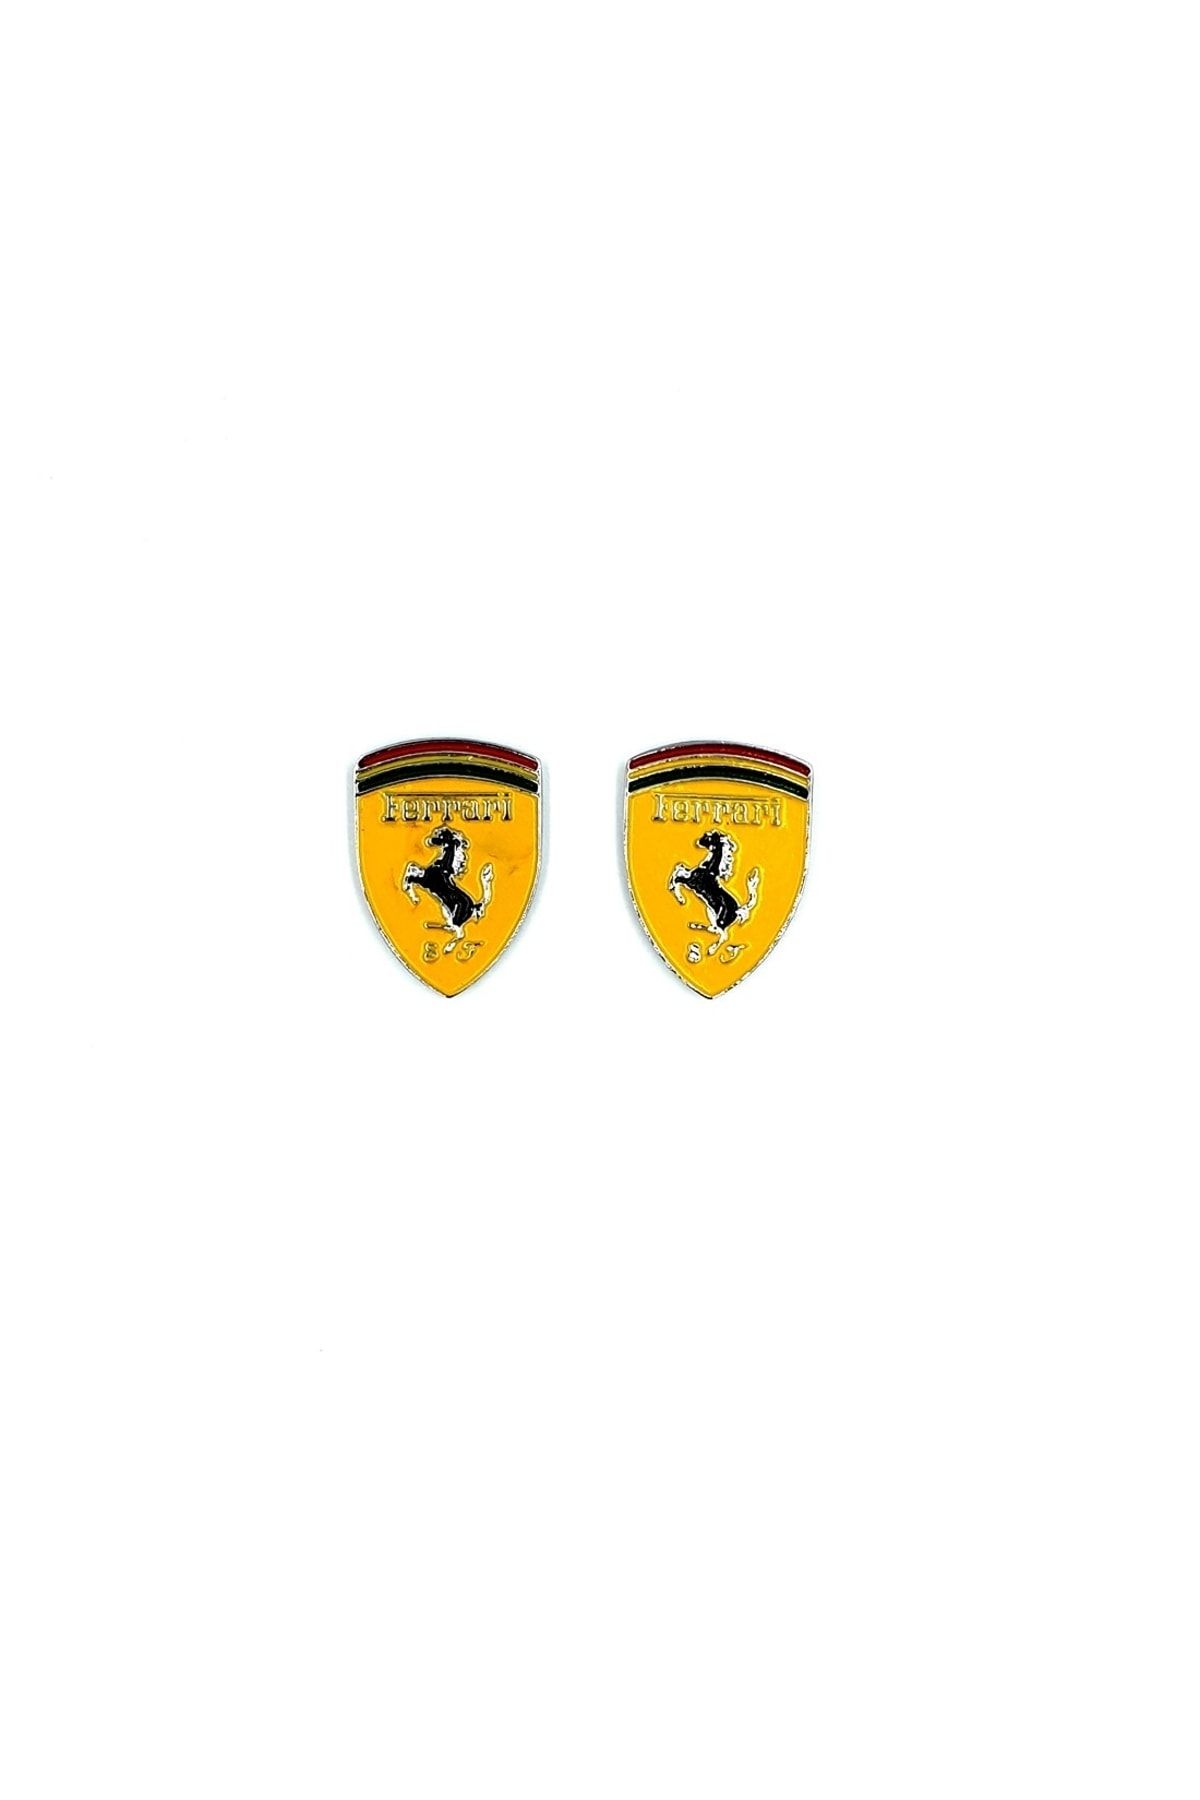 BsElektronik Metal Ferrari Yazılı Arma Sarı 2 Adet - Metal Arma Ferrari Sarı Takım